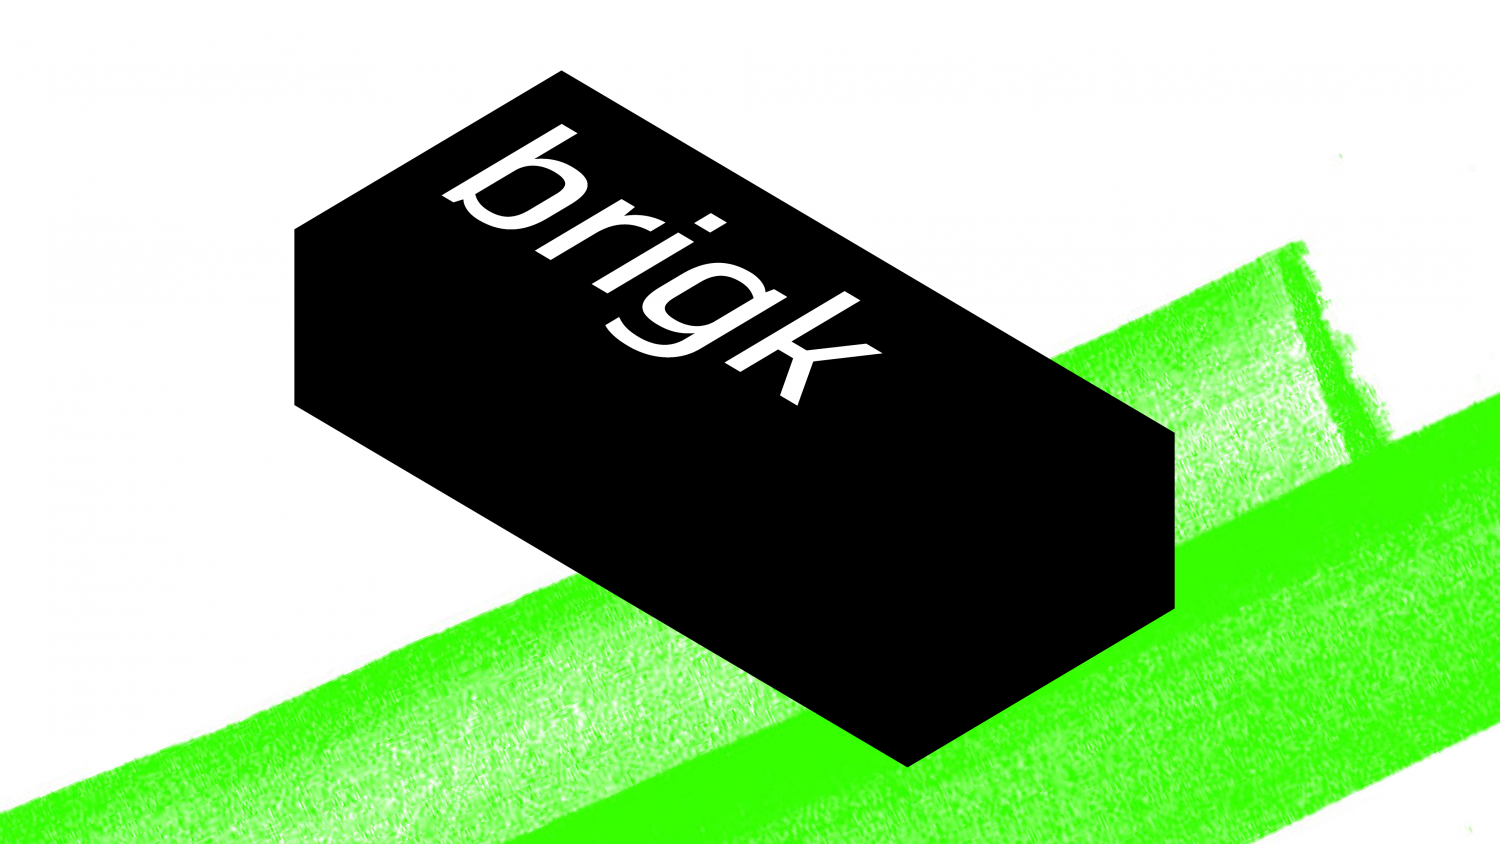 brigk - Markenentwicklung